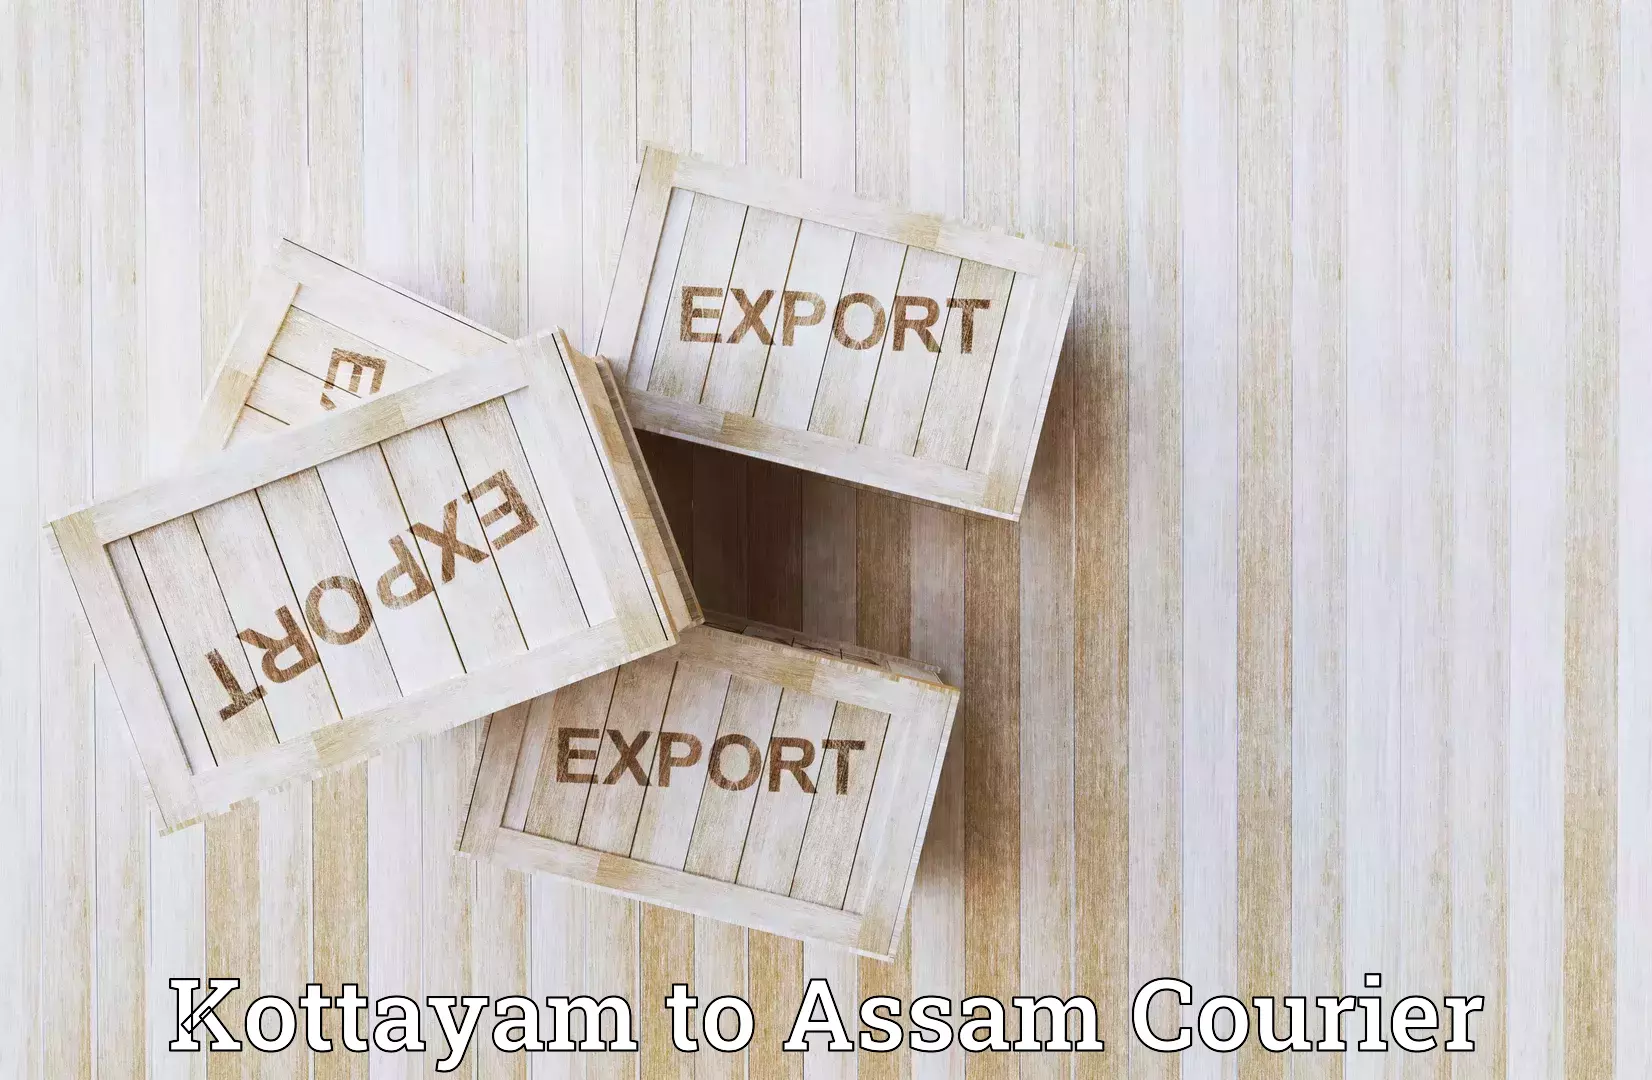 Weekend courier service Kottayam to Assam